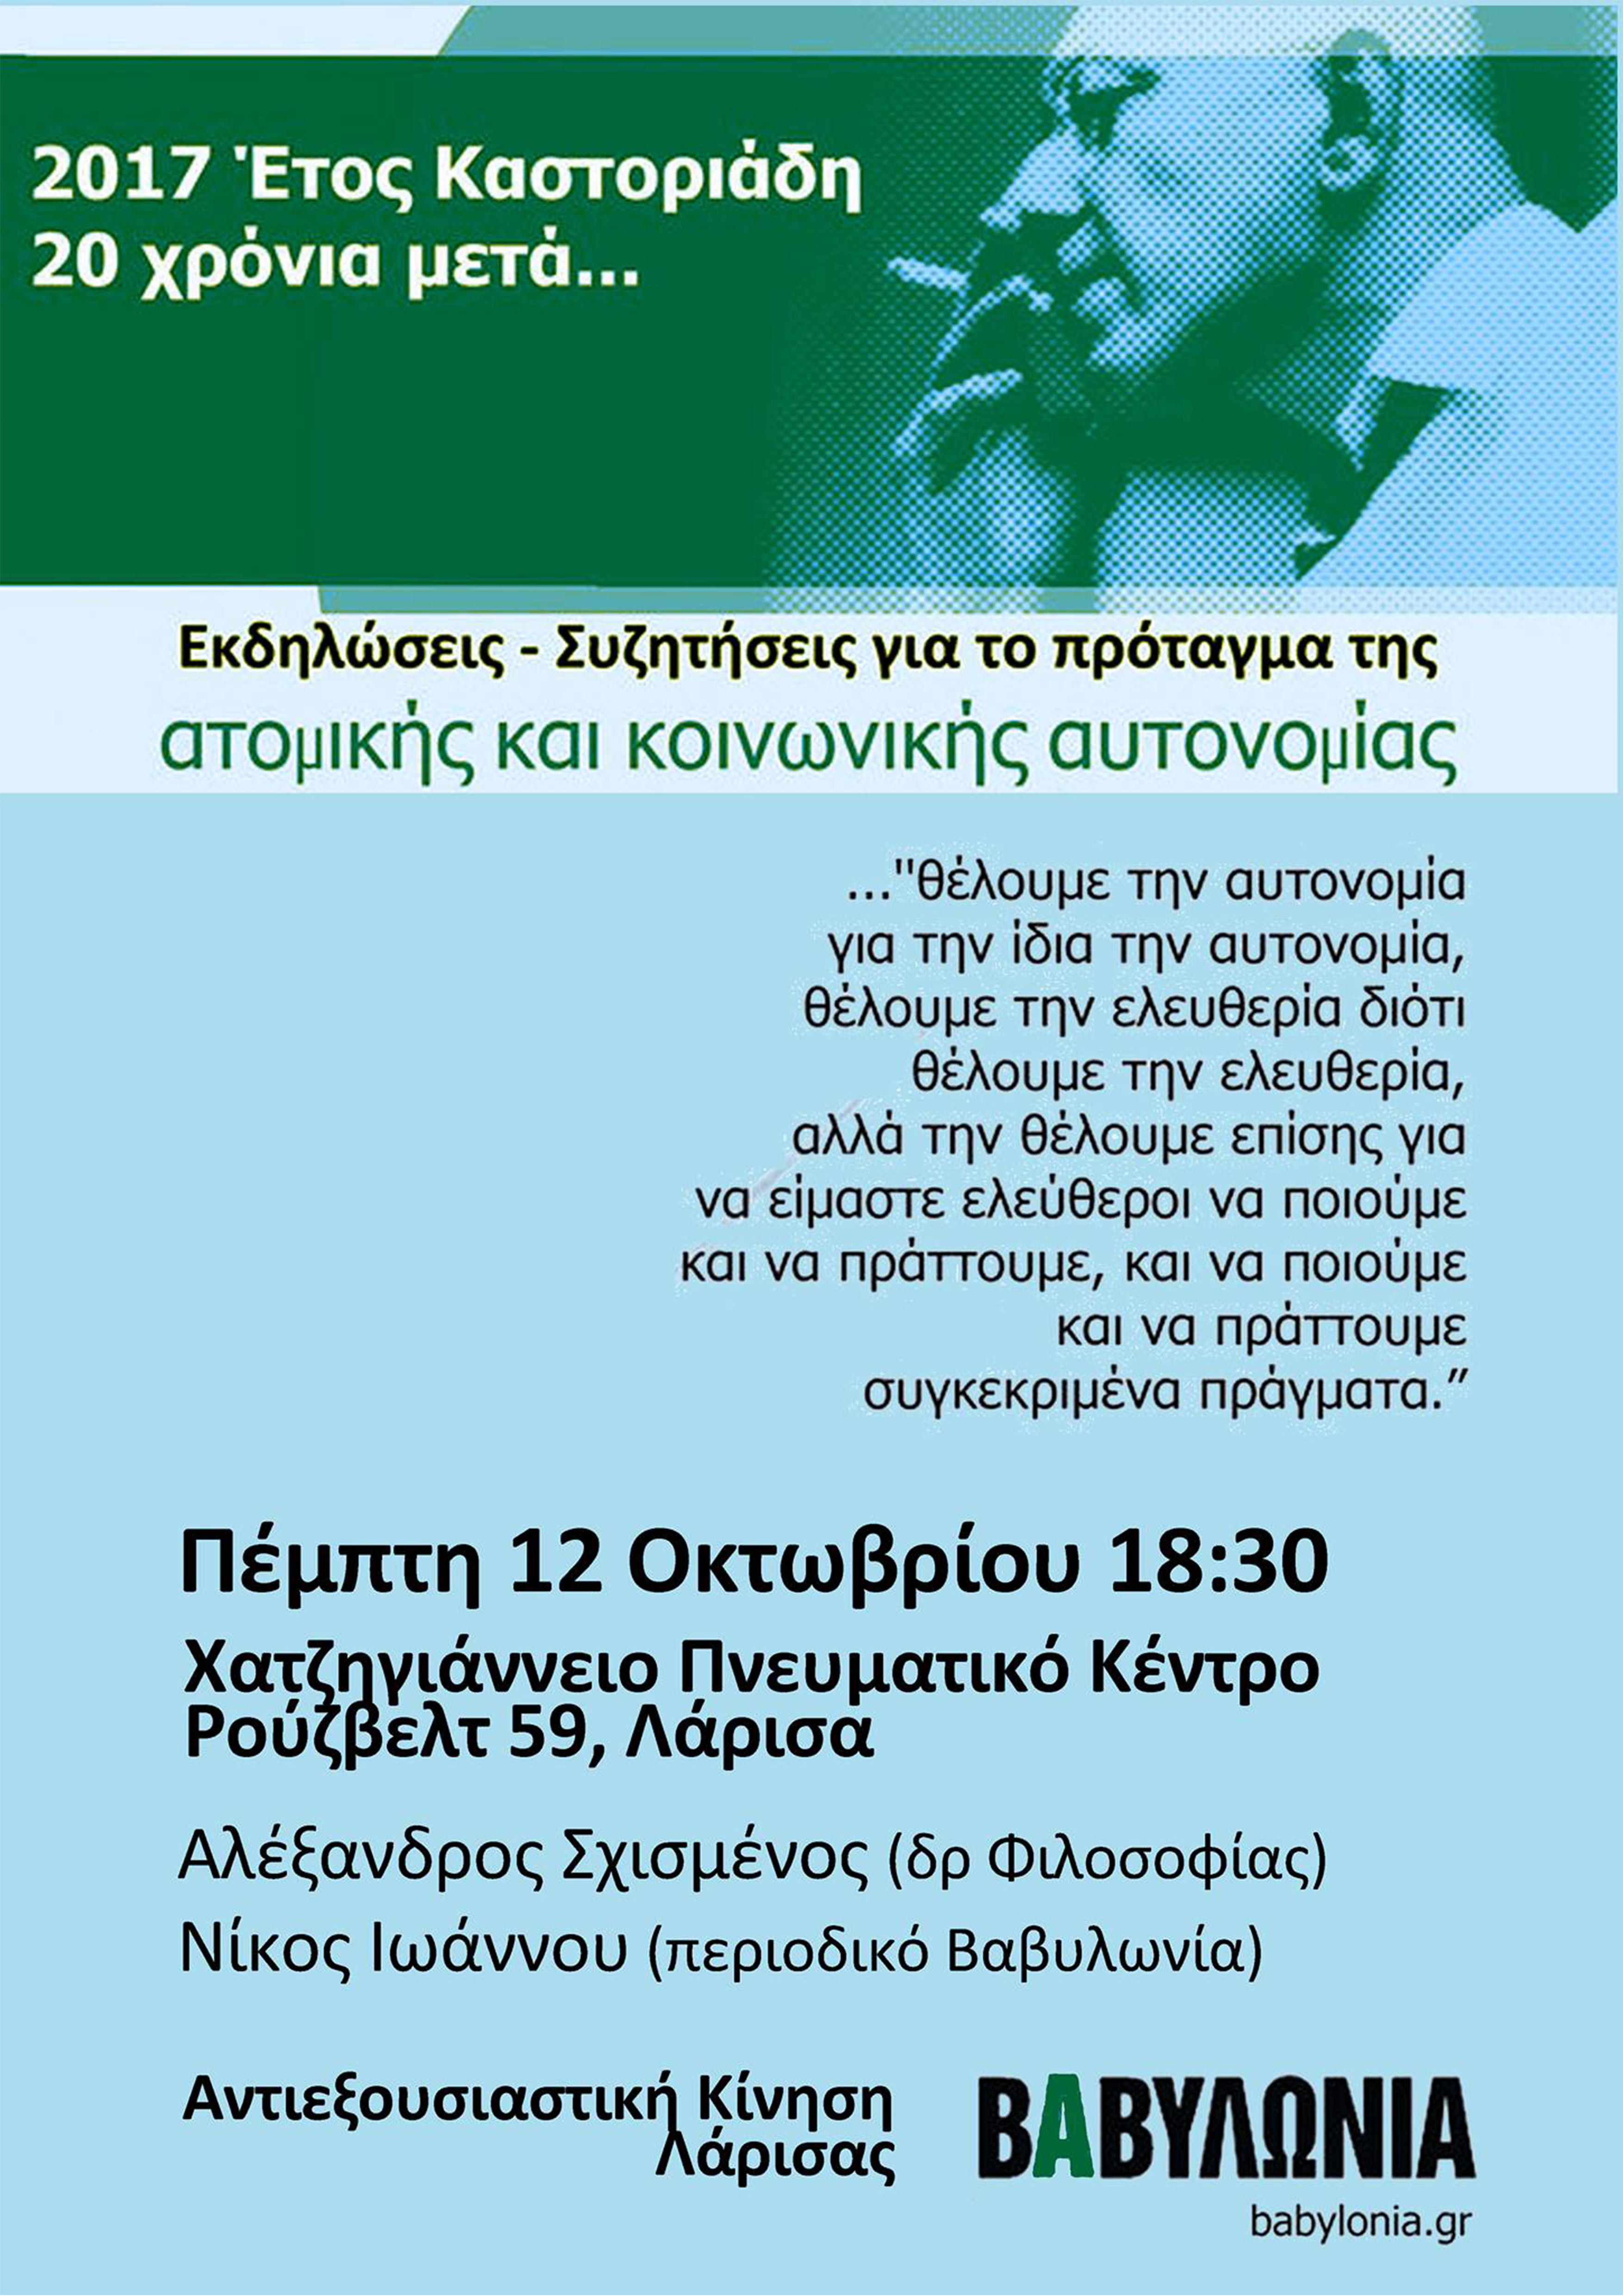 Eκδήλωση της Αντιεξουσιαστικής Κίνησης Λάρισας για το έτος Καστοριάδη